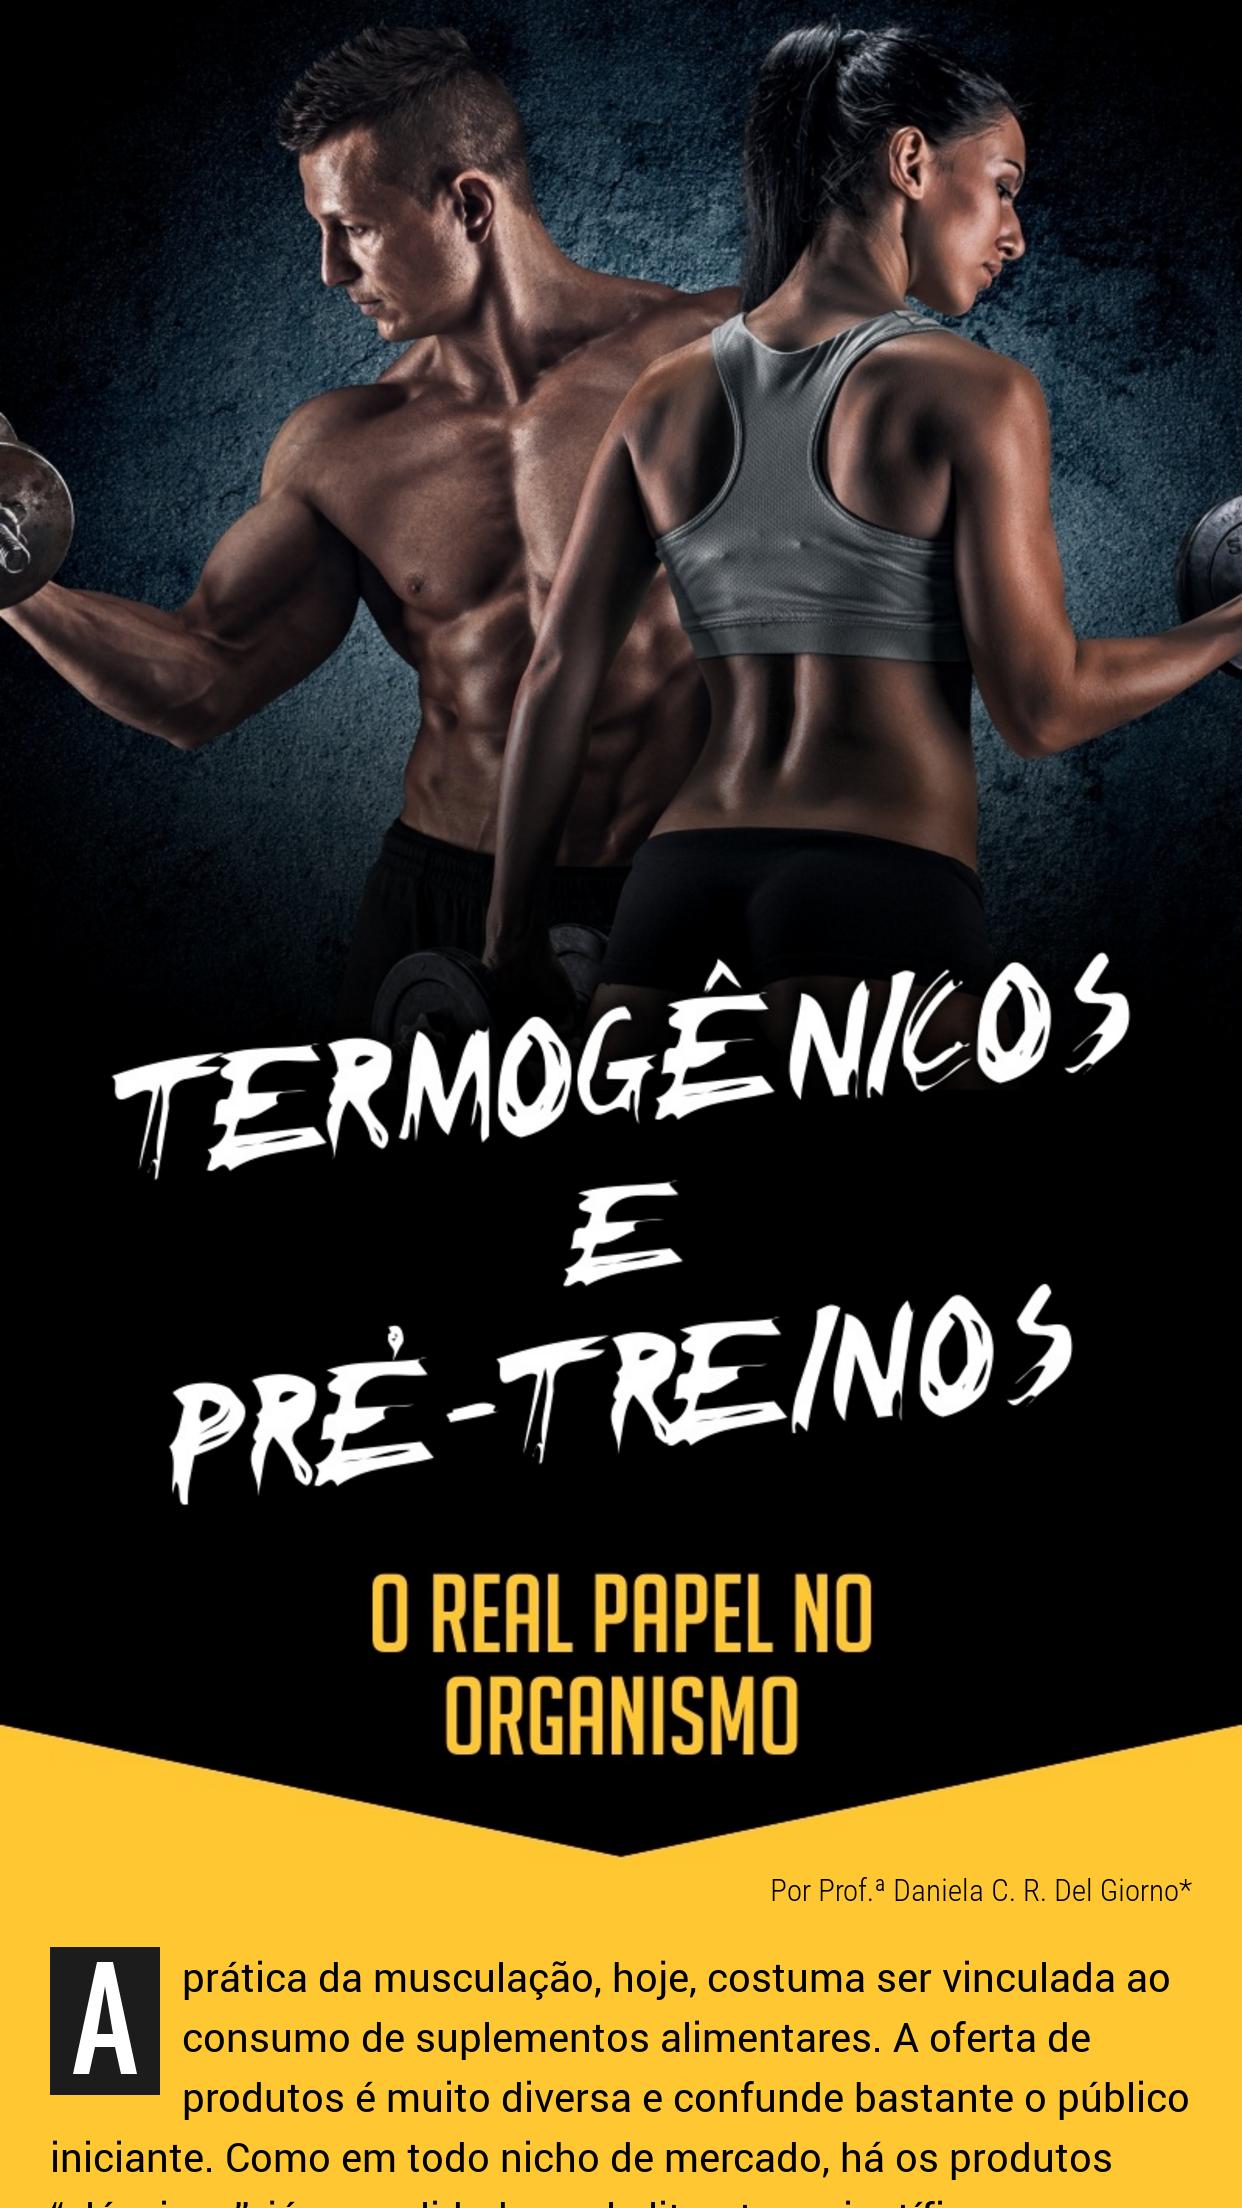 Revista Musculação & Fitness for Android - APK Download